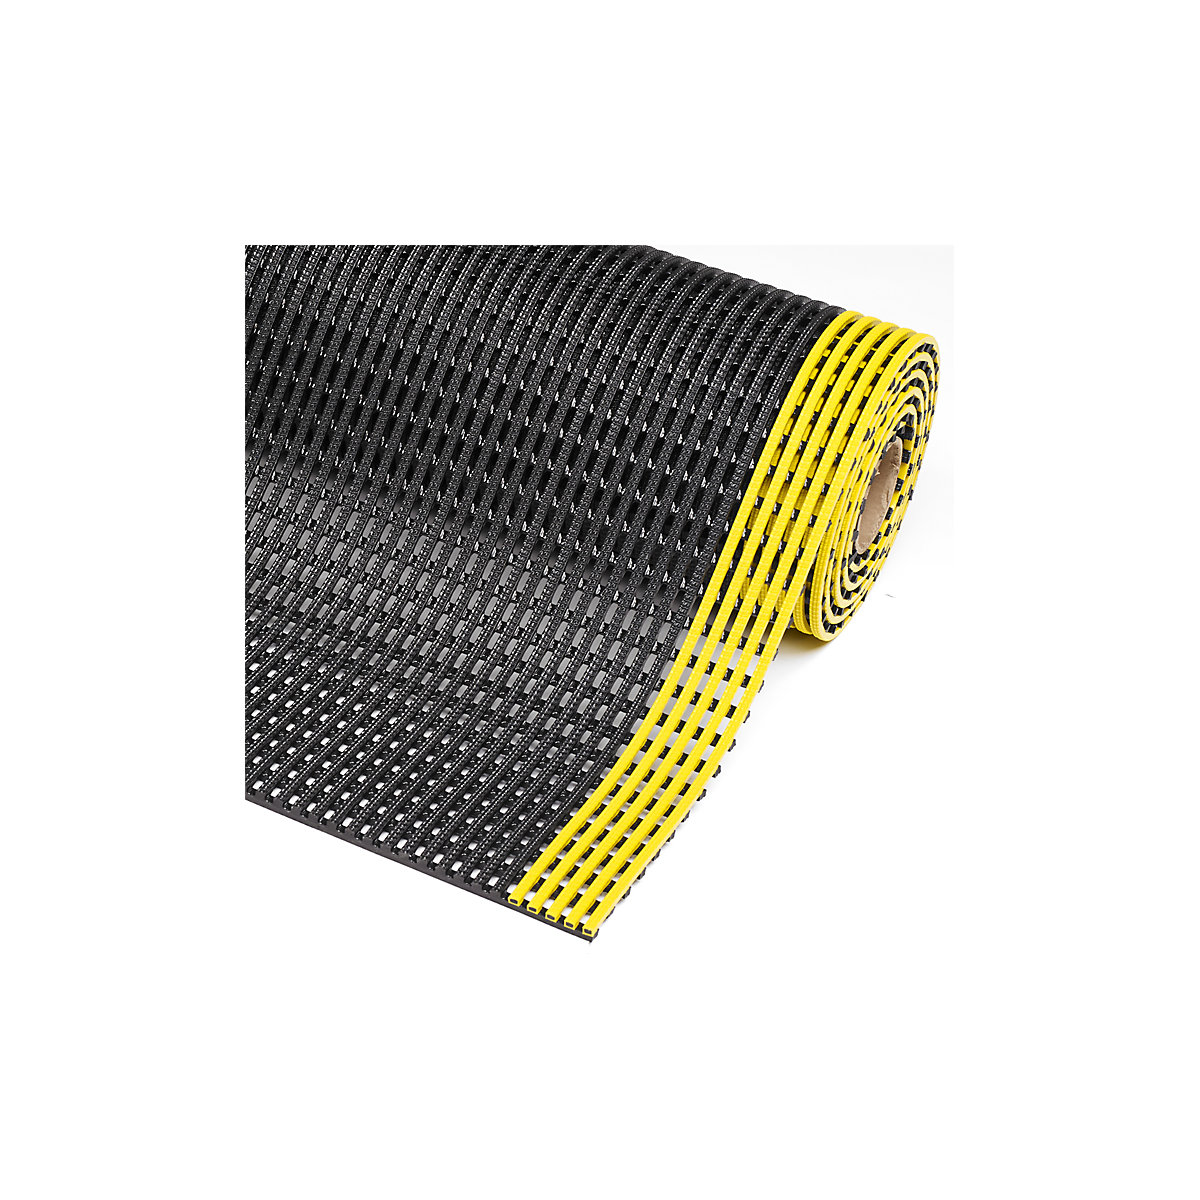 Gittermatte Flexdek™ NOTRAX, Breite 900 mm, pro lfd. m, schwarz/gelb-3